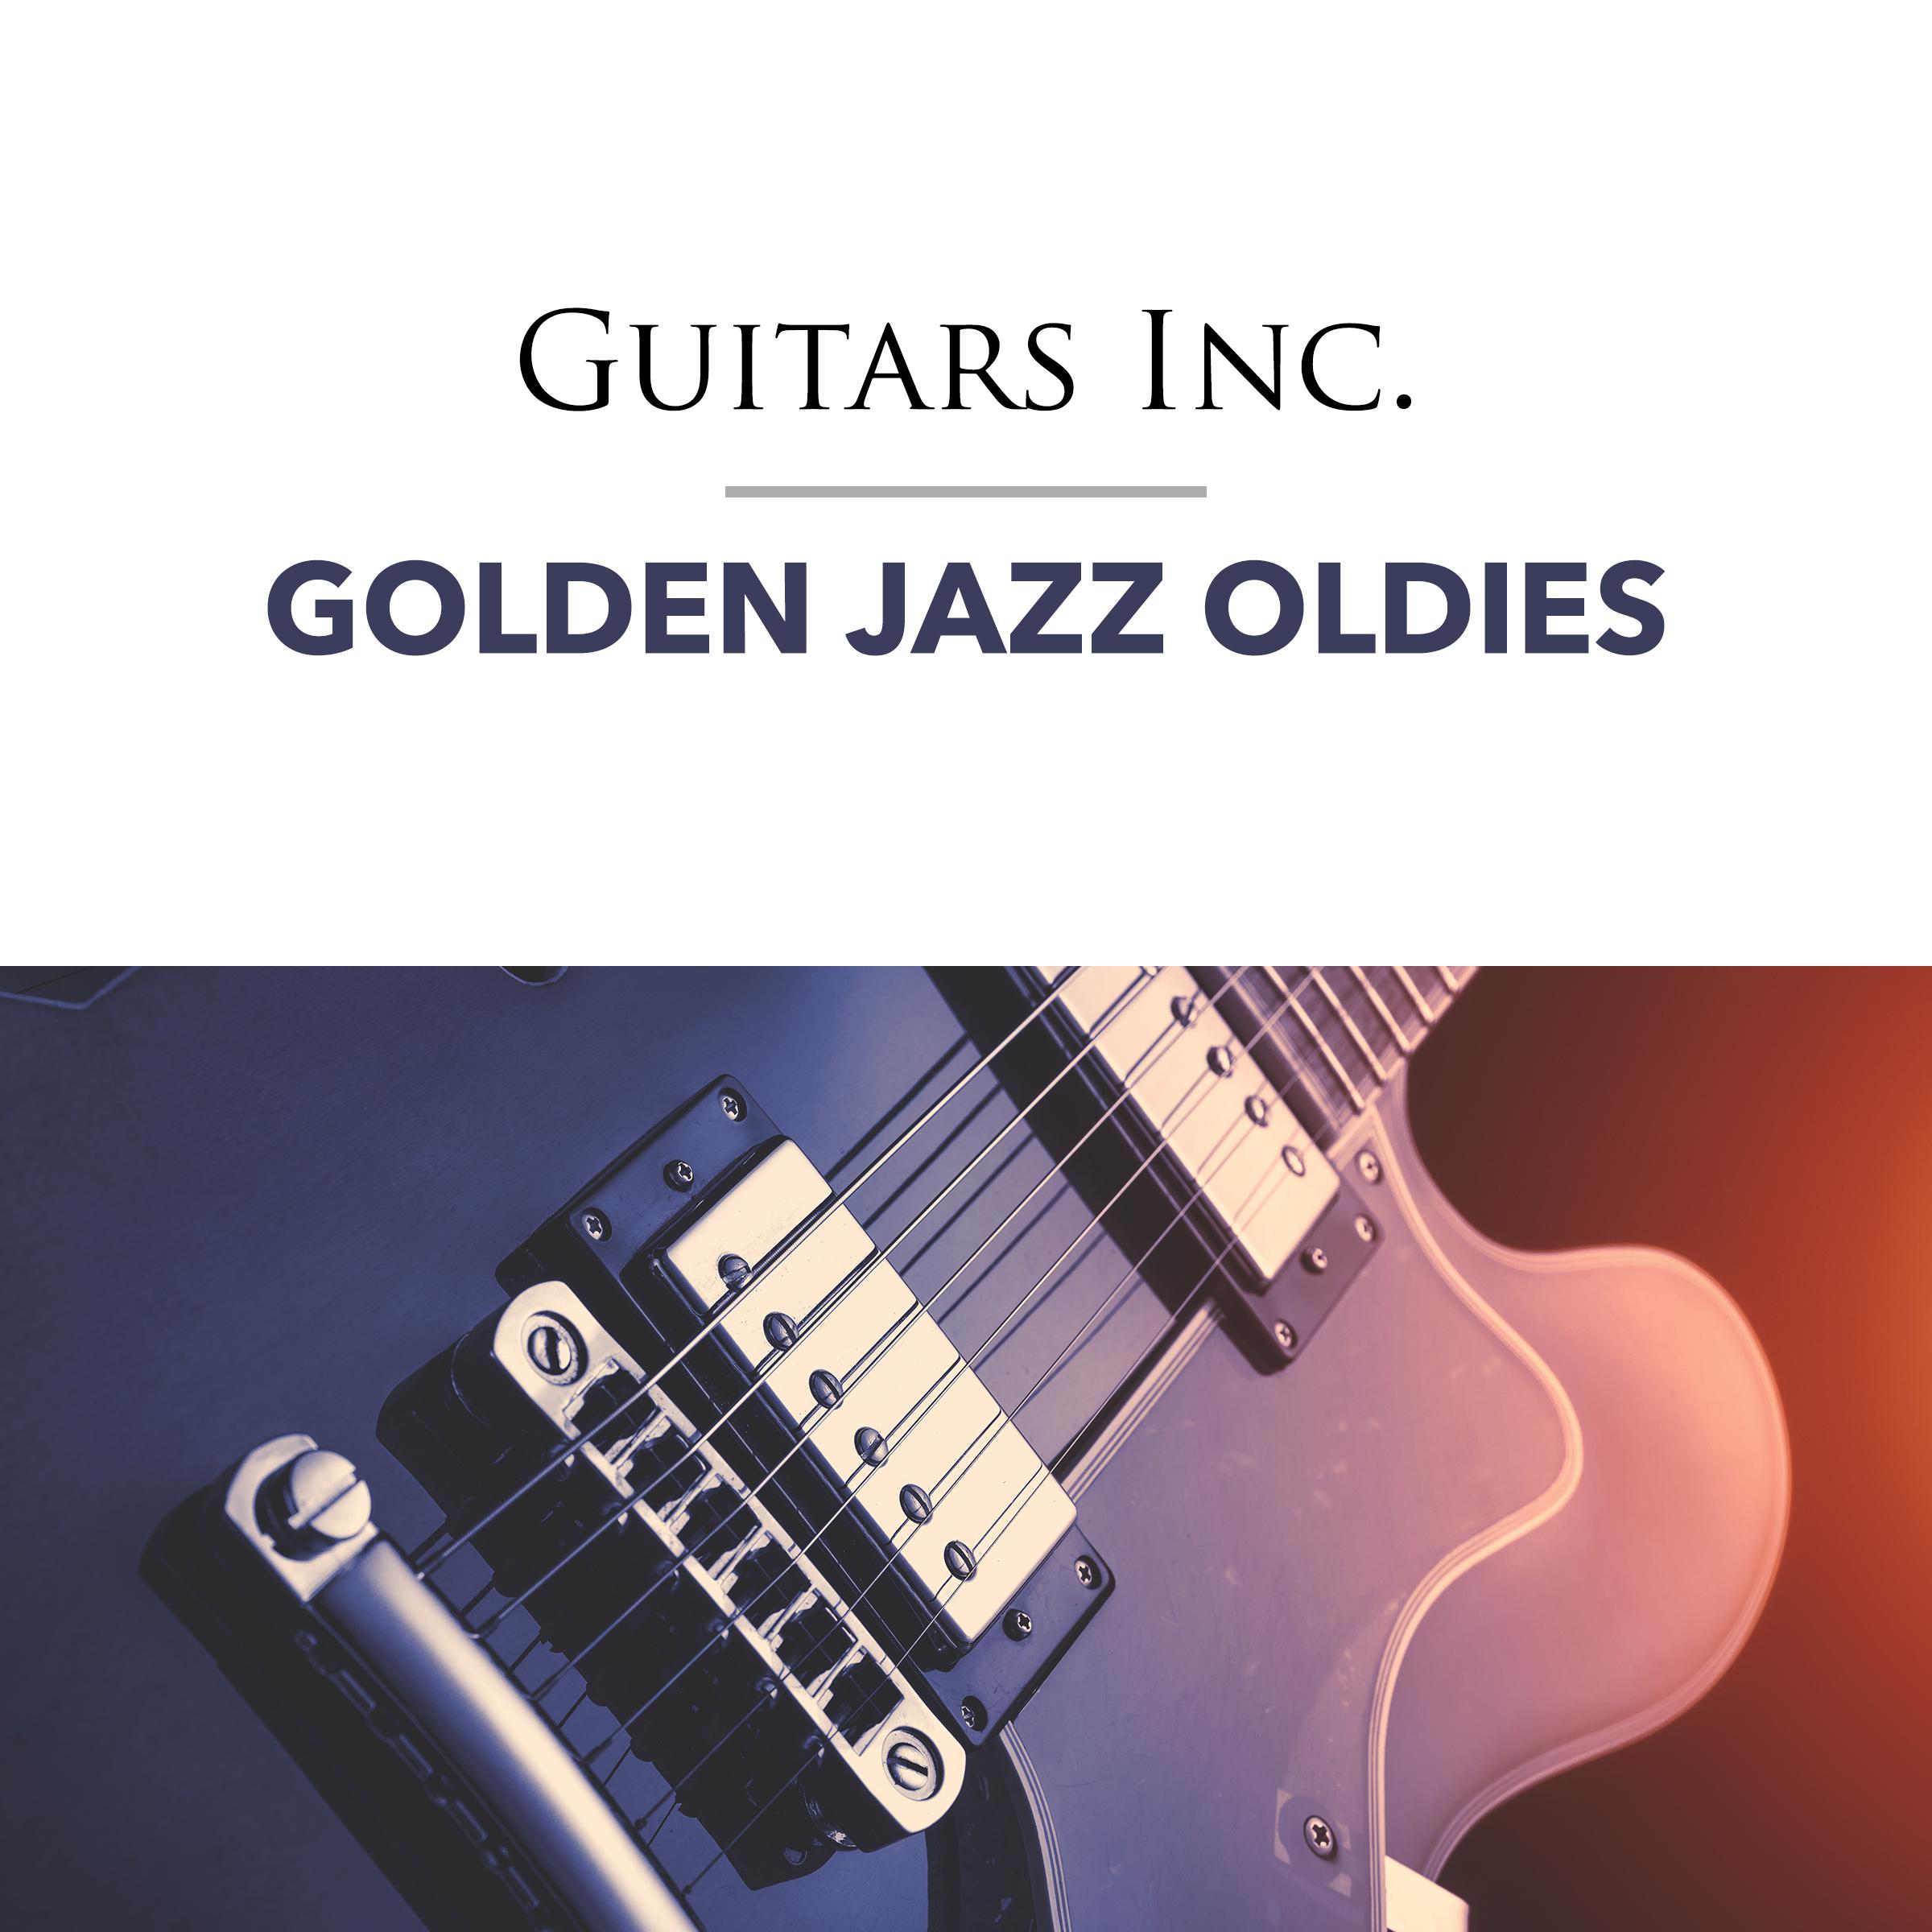 Golden Jazz Oldies